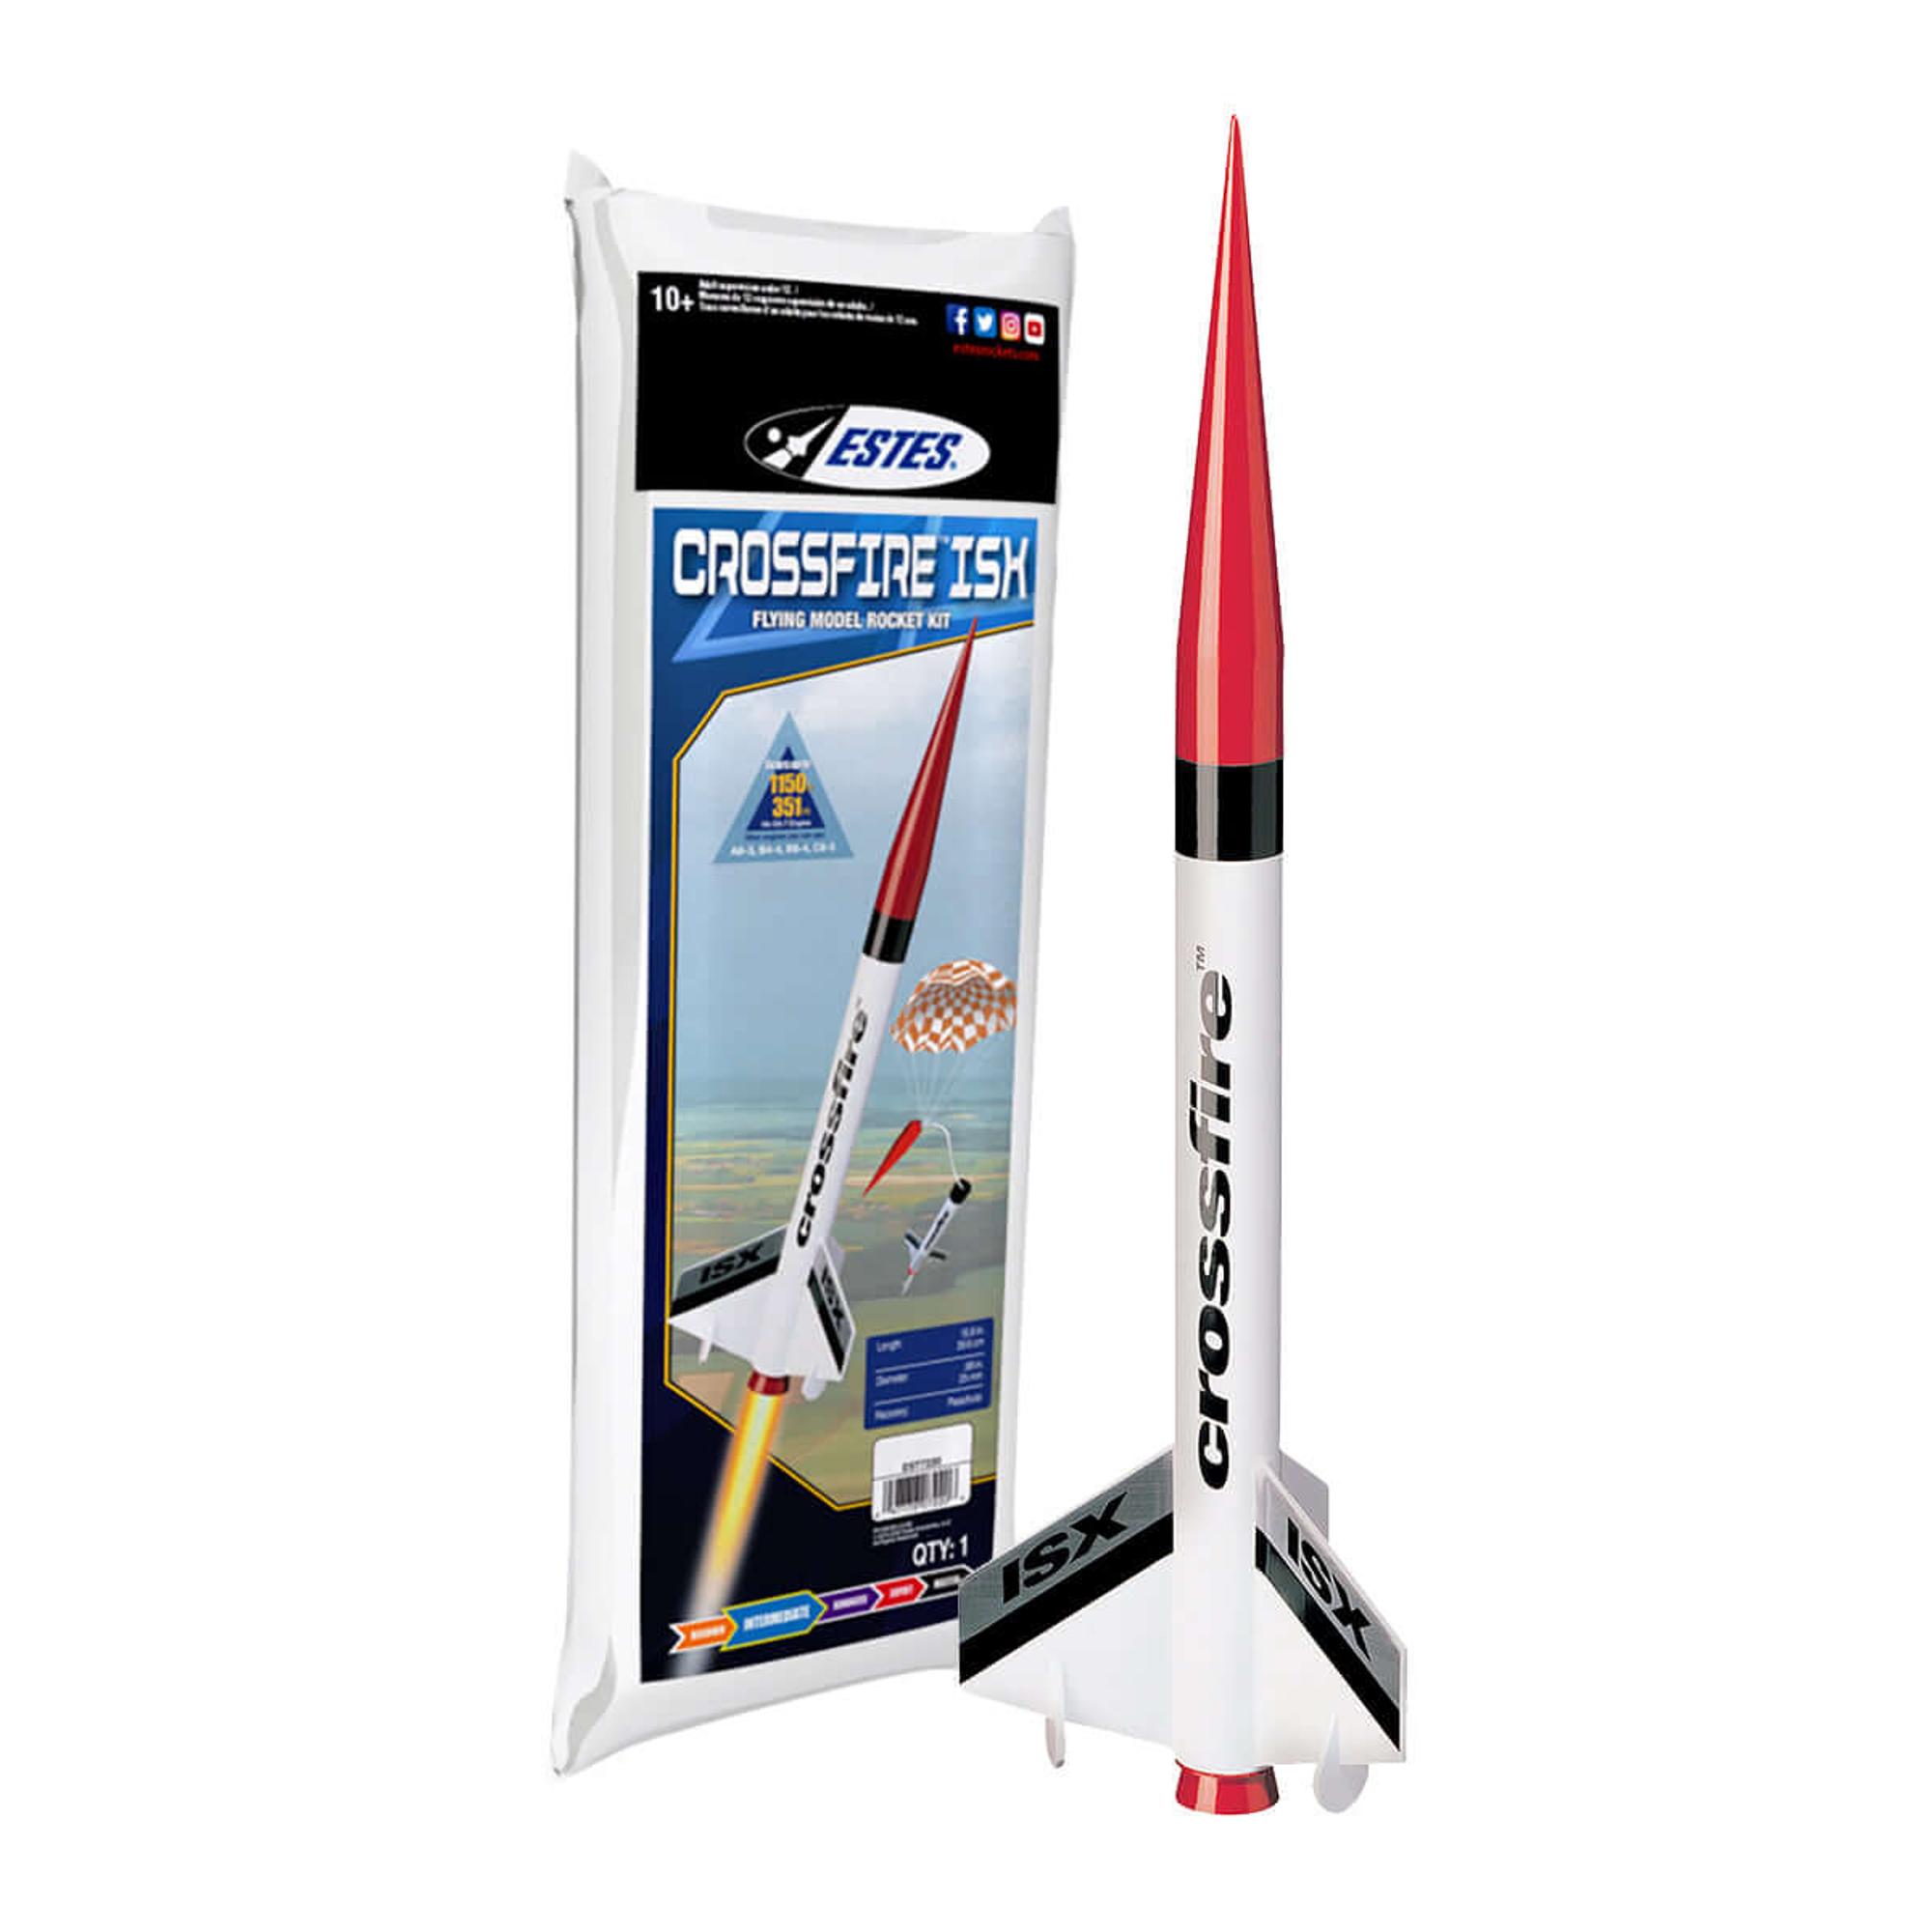 Crossfire ISX Rocket Kit